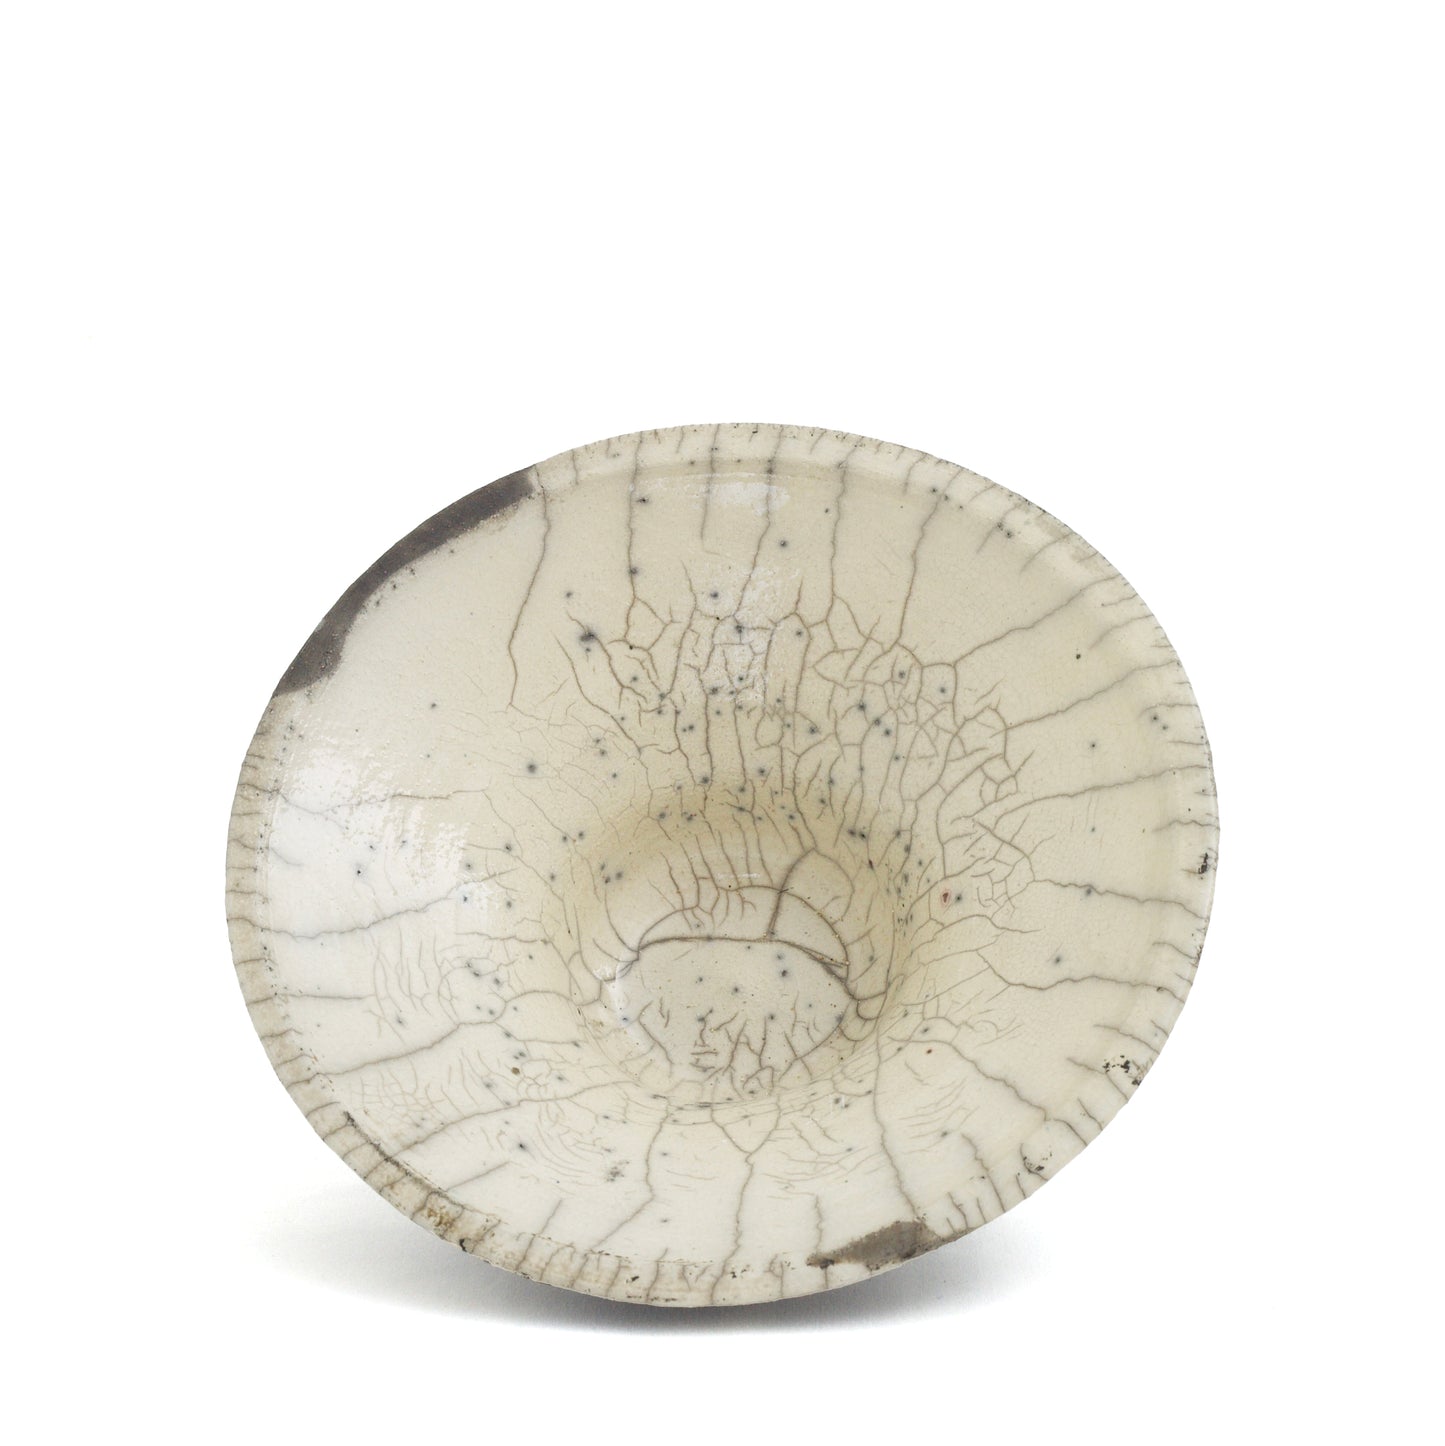 Japanese Modern Cratere Vase Raku Ceramic Black White Crakle Spiral